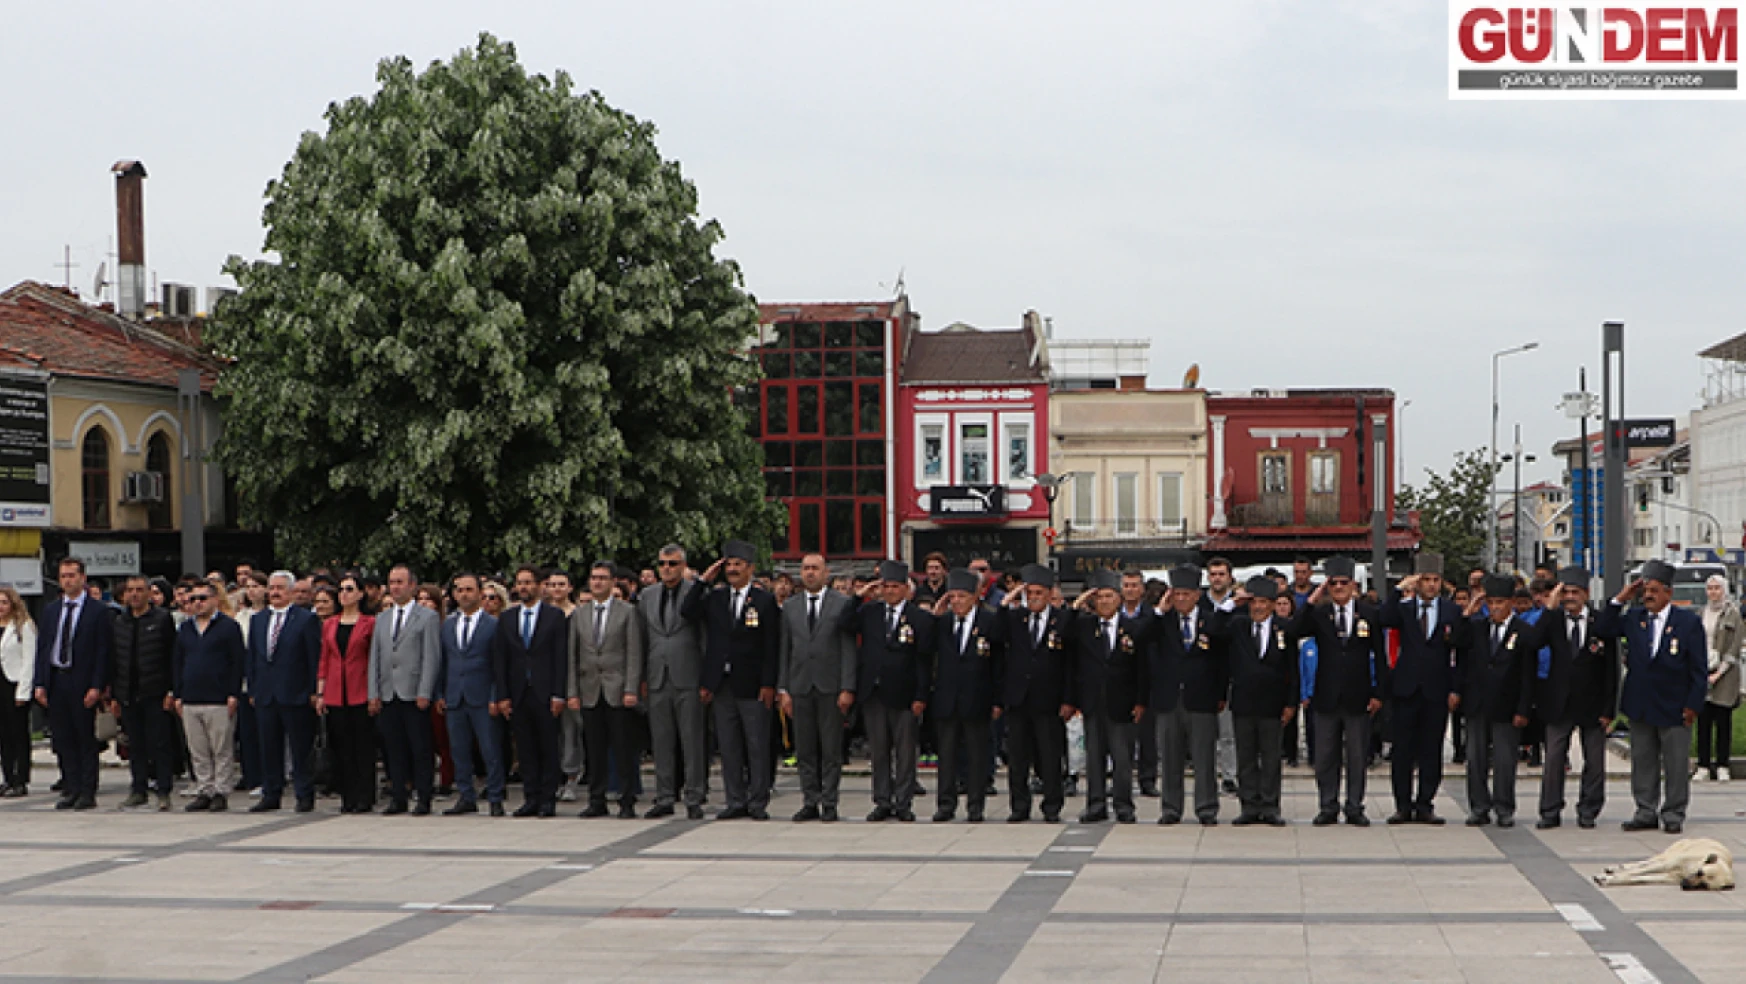 Edirne'de Gençlik Haftası dolayısıyla tören düzenlendi